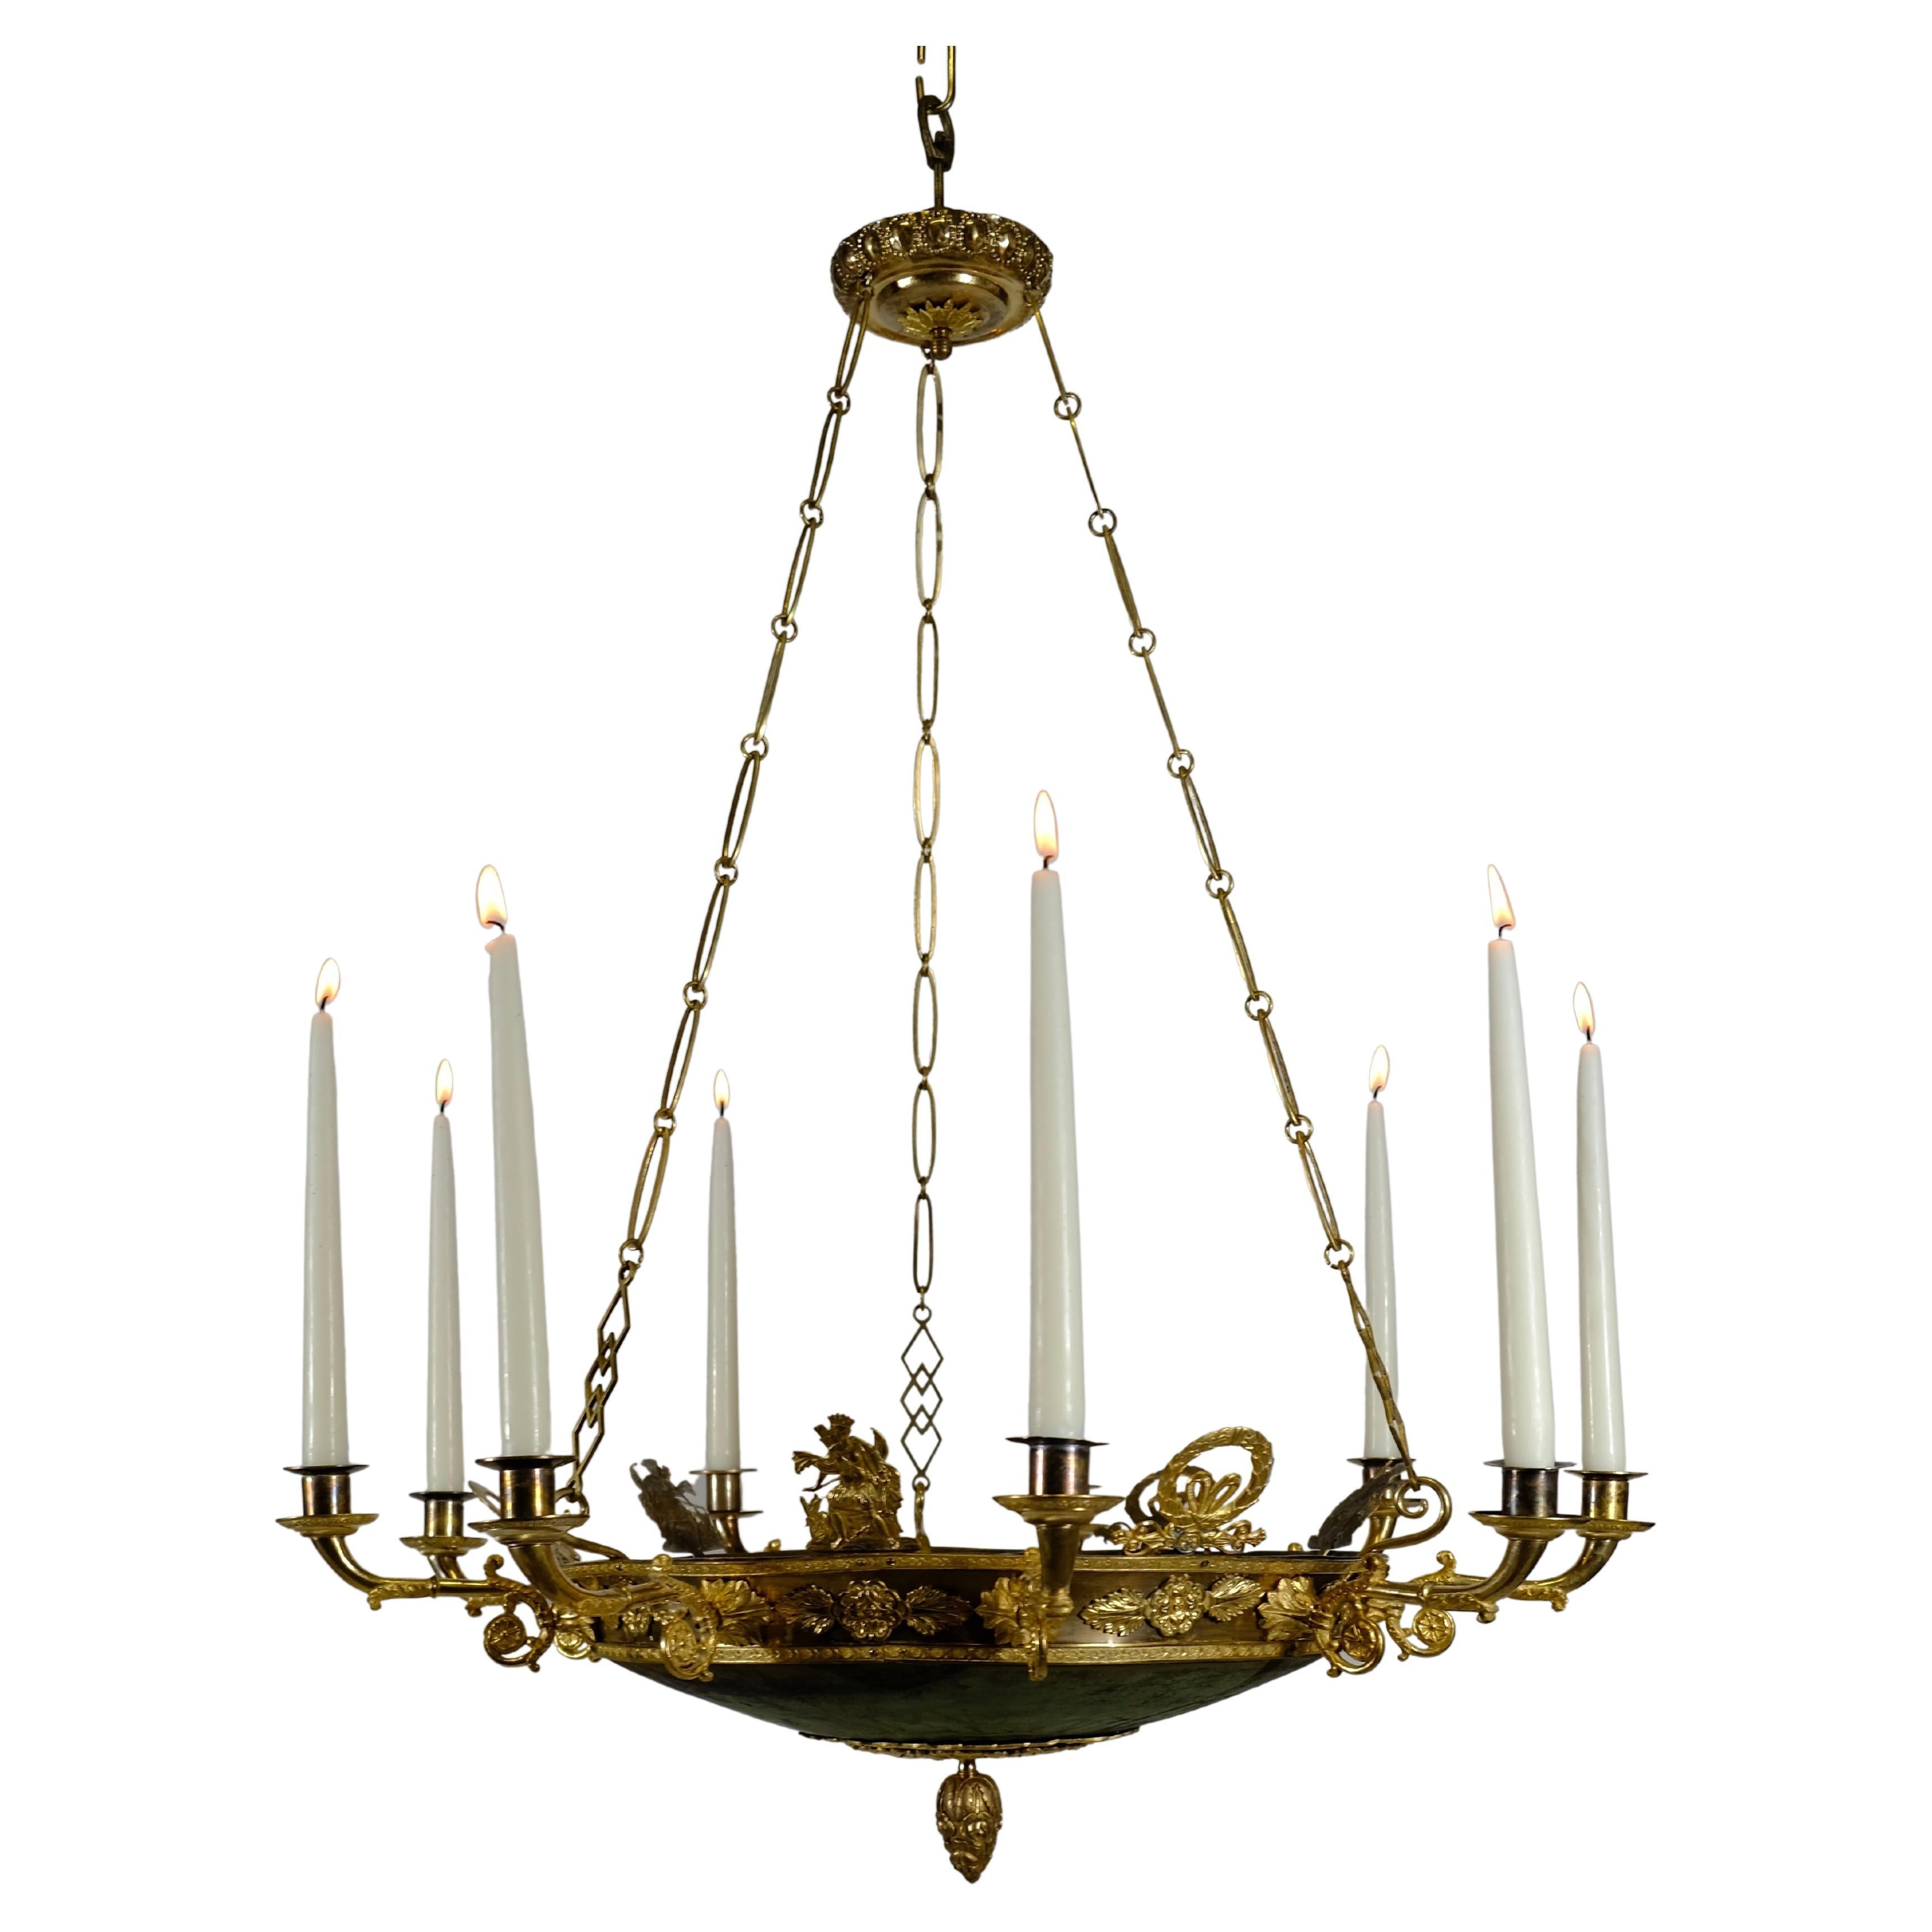 Antiker Empire-Kronleuchter mit 9 Lichtern. Hergestellt um 1820